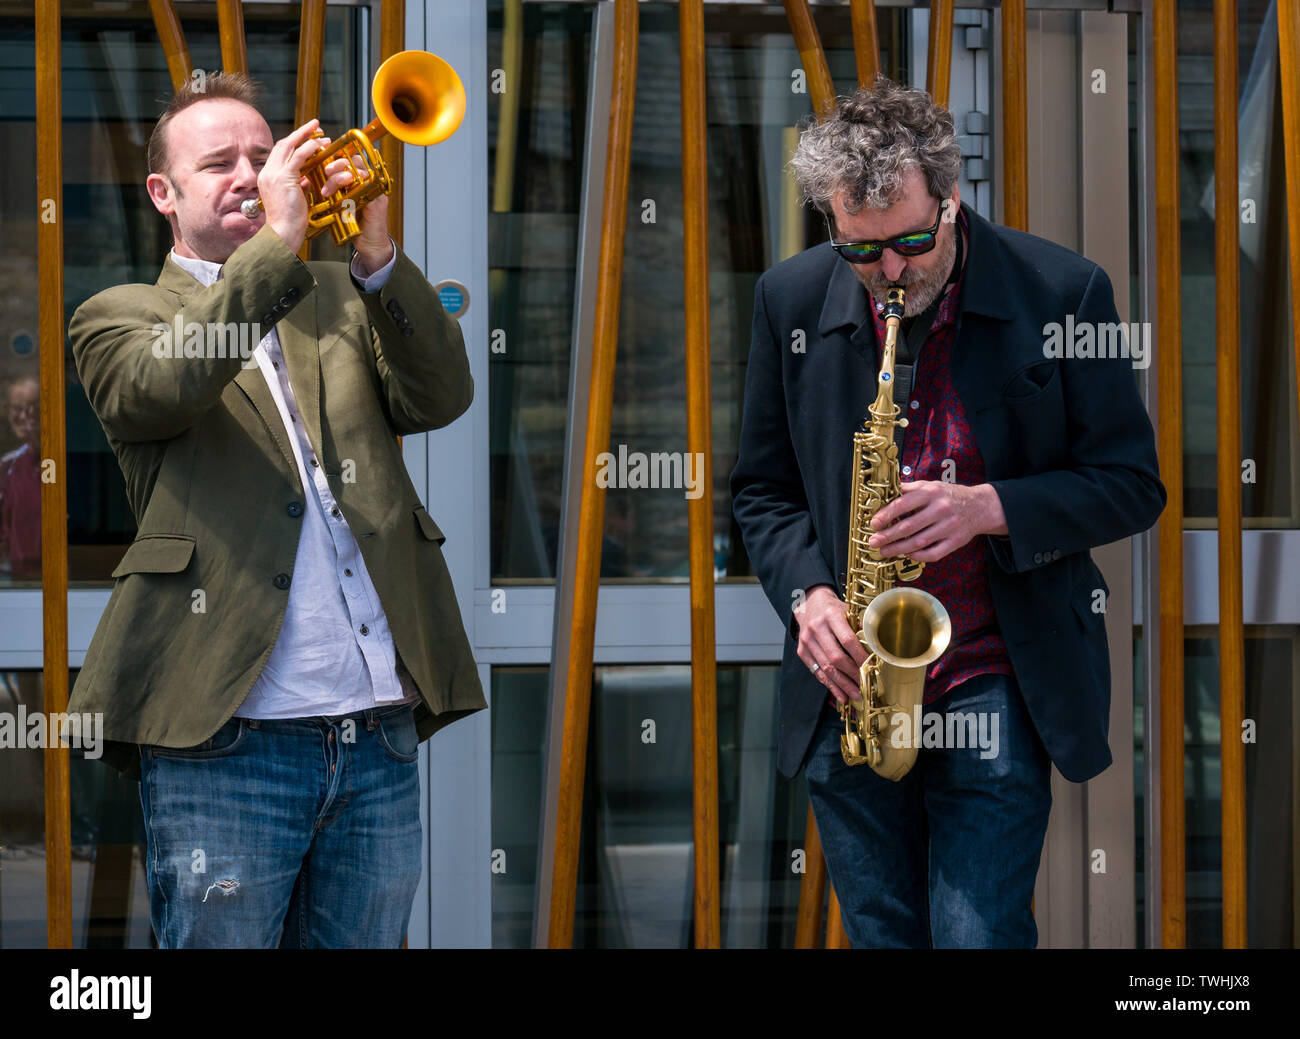 Rébellion Extinction Changement climatique & trompette protester contre les joueurs de saxophone jazz, Parlement de l'Écosse, Édimbourg, Écosse, Royaume-Uni Banque D'Images